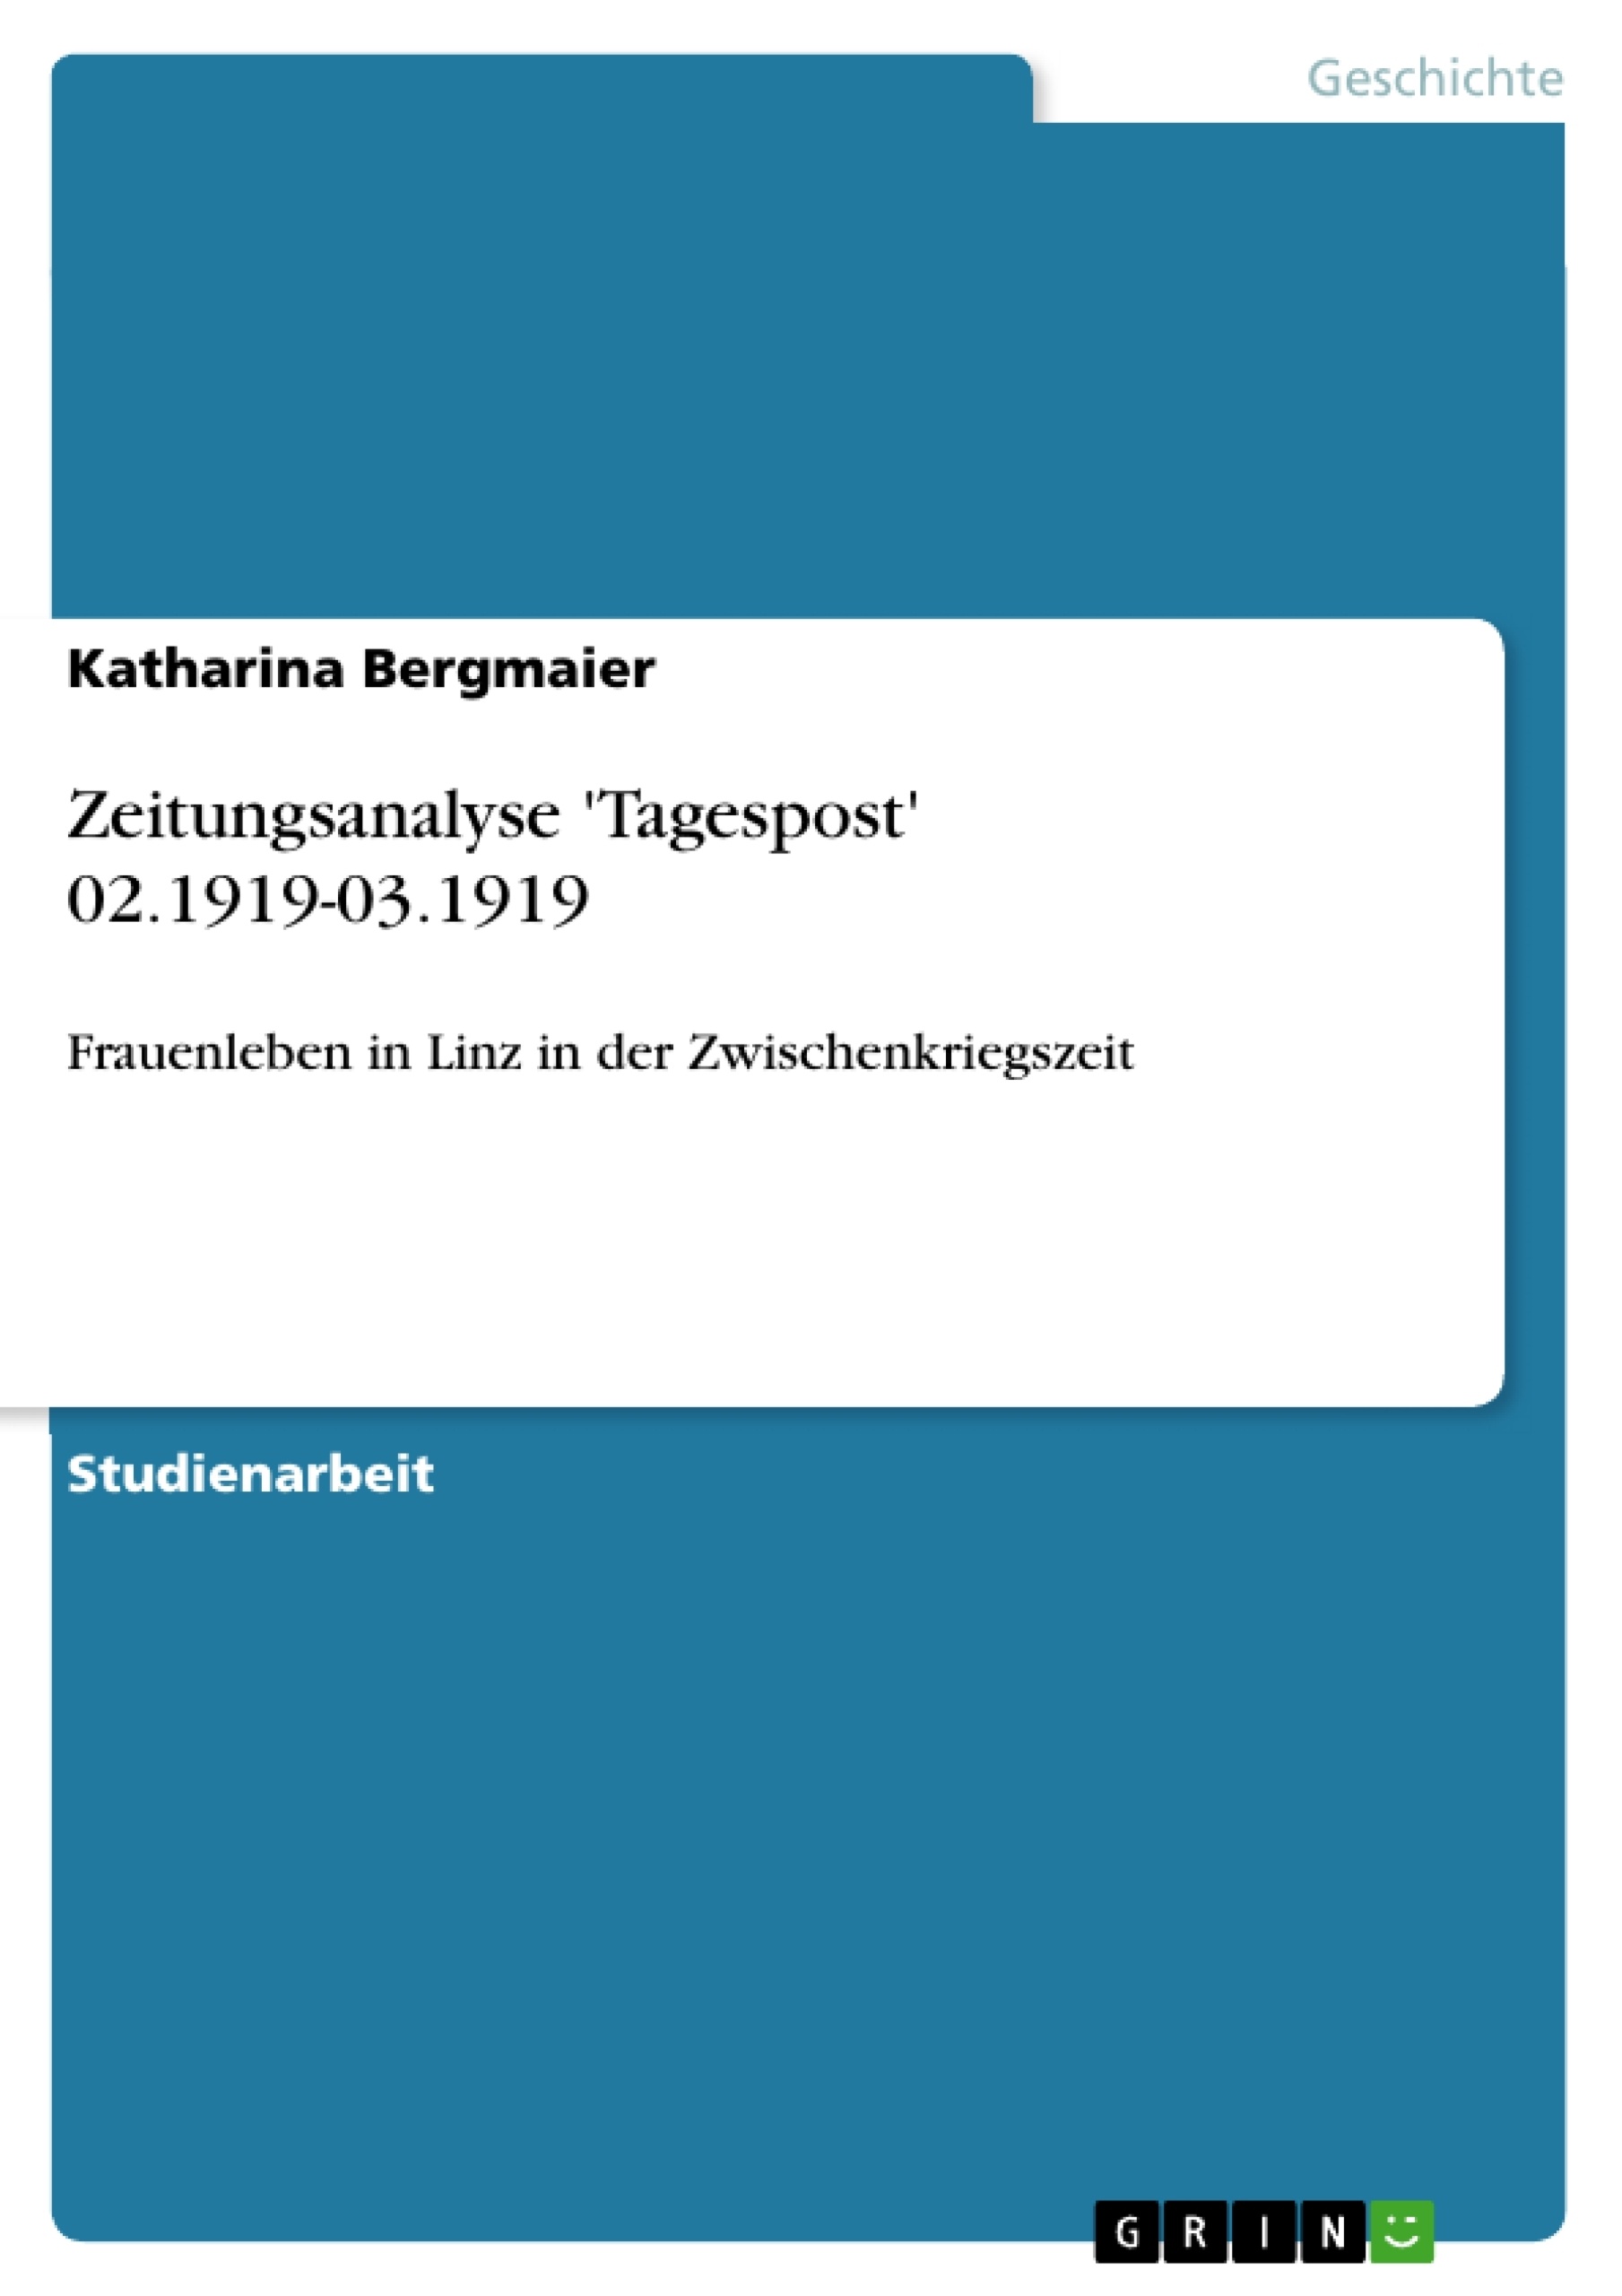 Título: Zeitungsanalyse 'Tagespost' 02.1919-03.1919